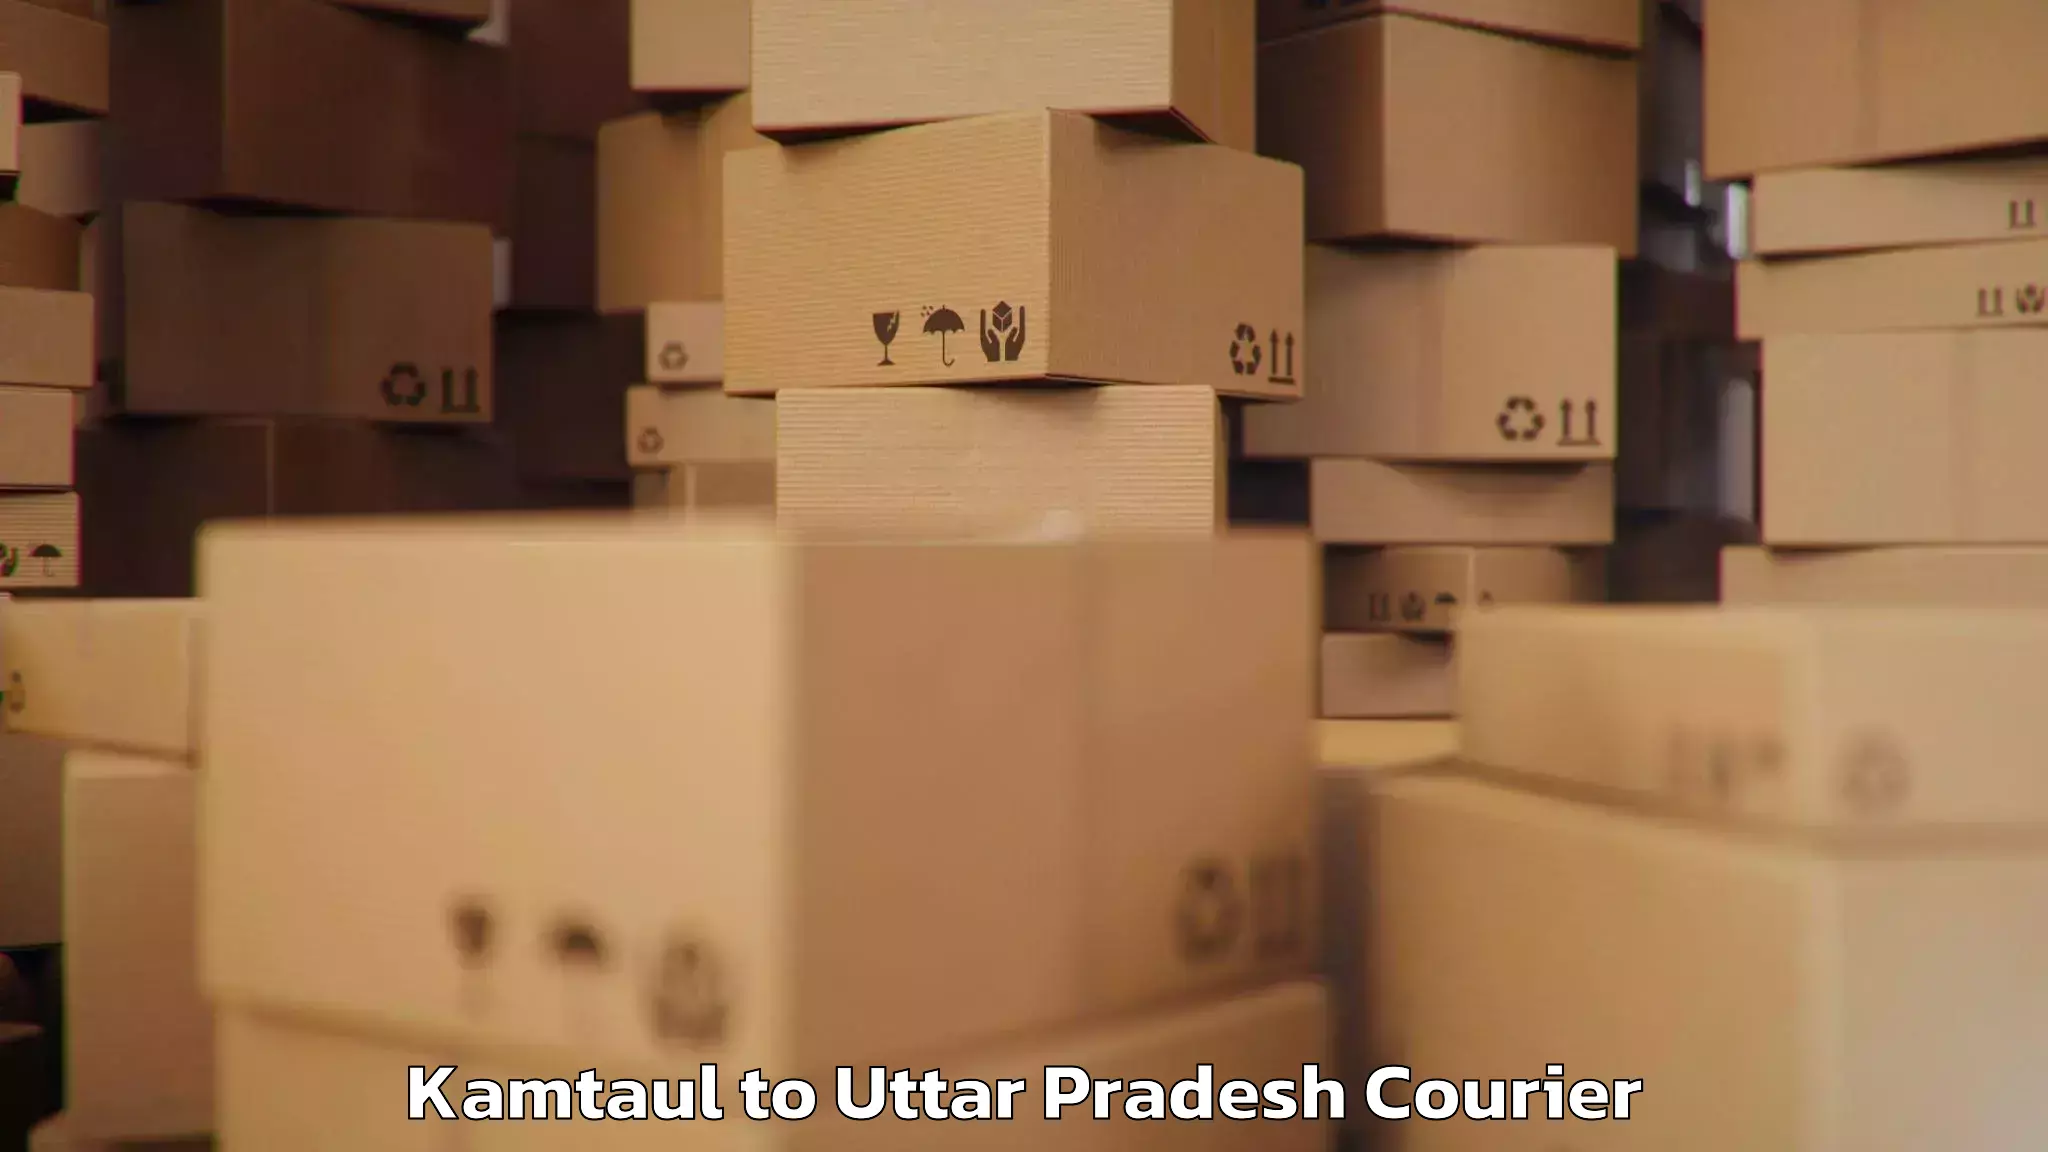 Baggage shipping calculator Kamtaul to Ayodhya